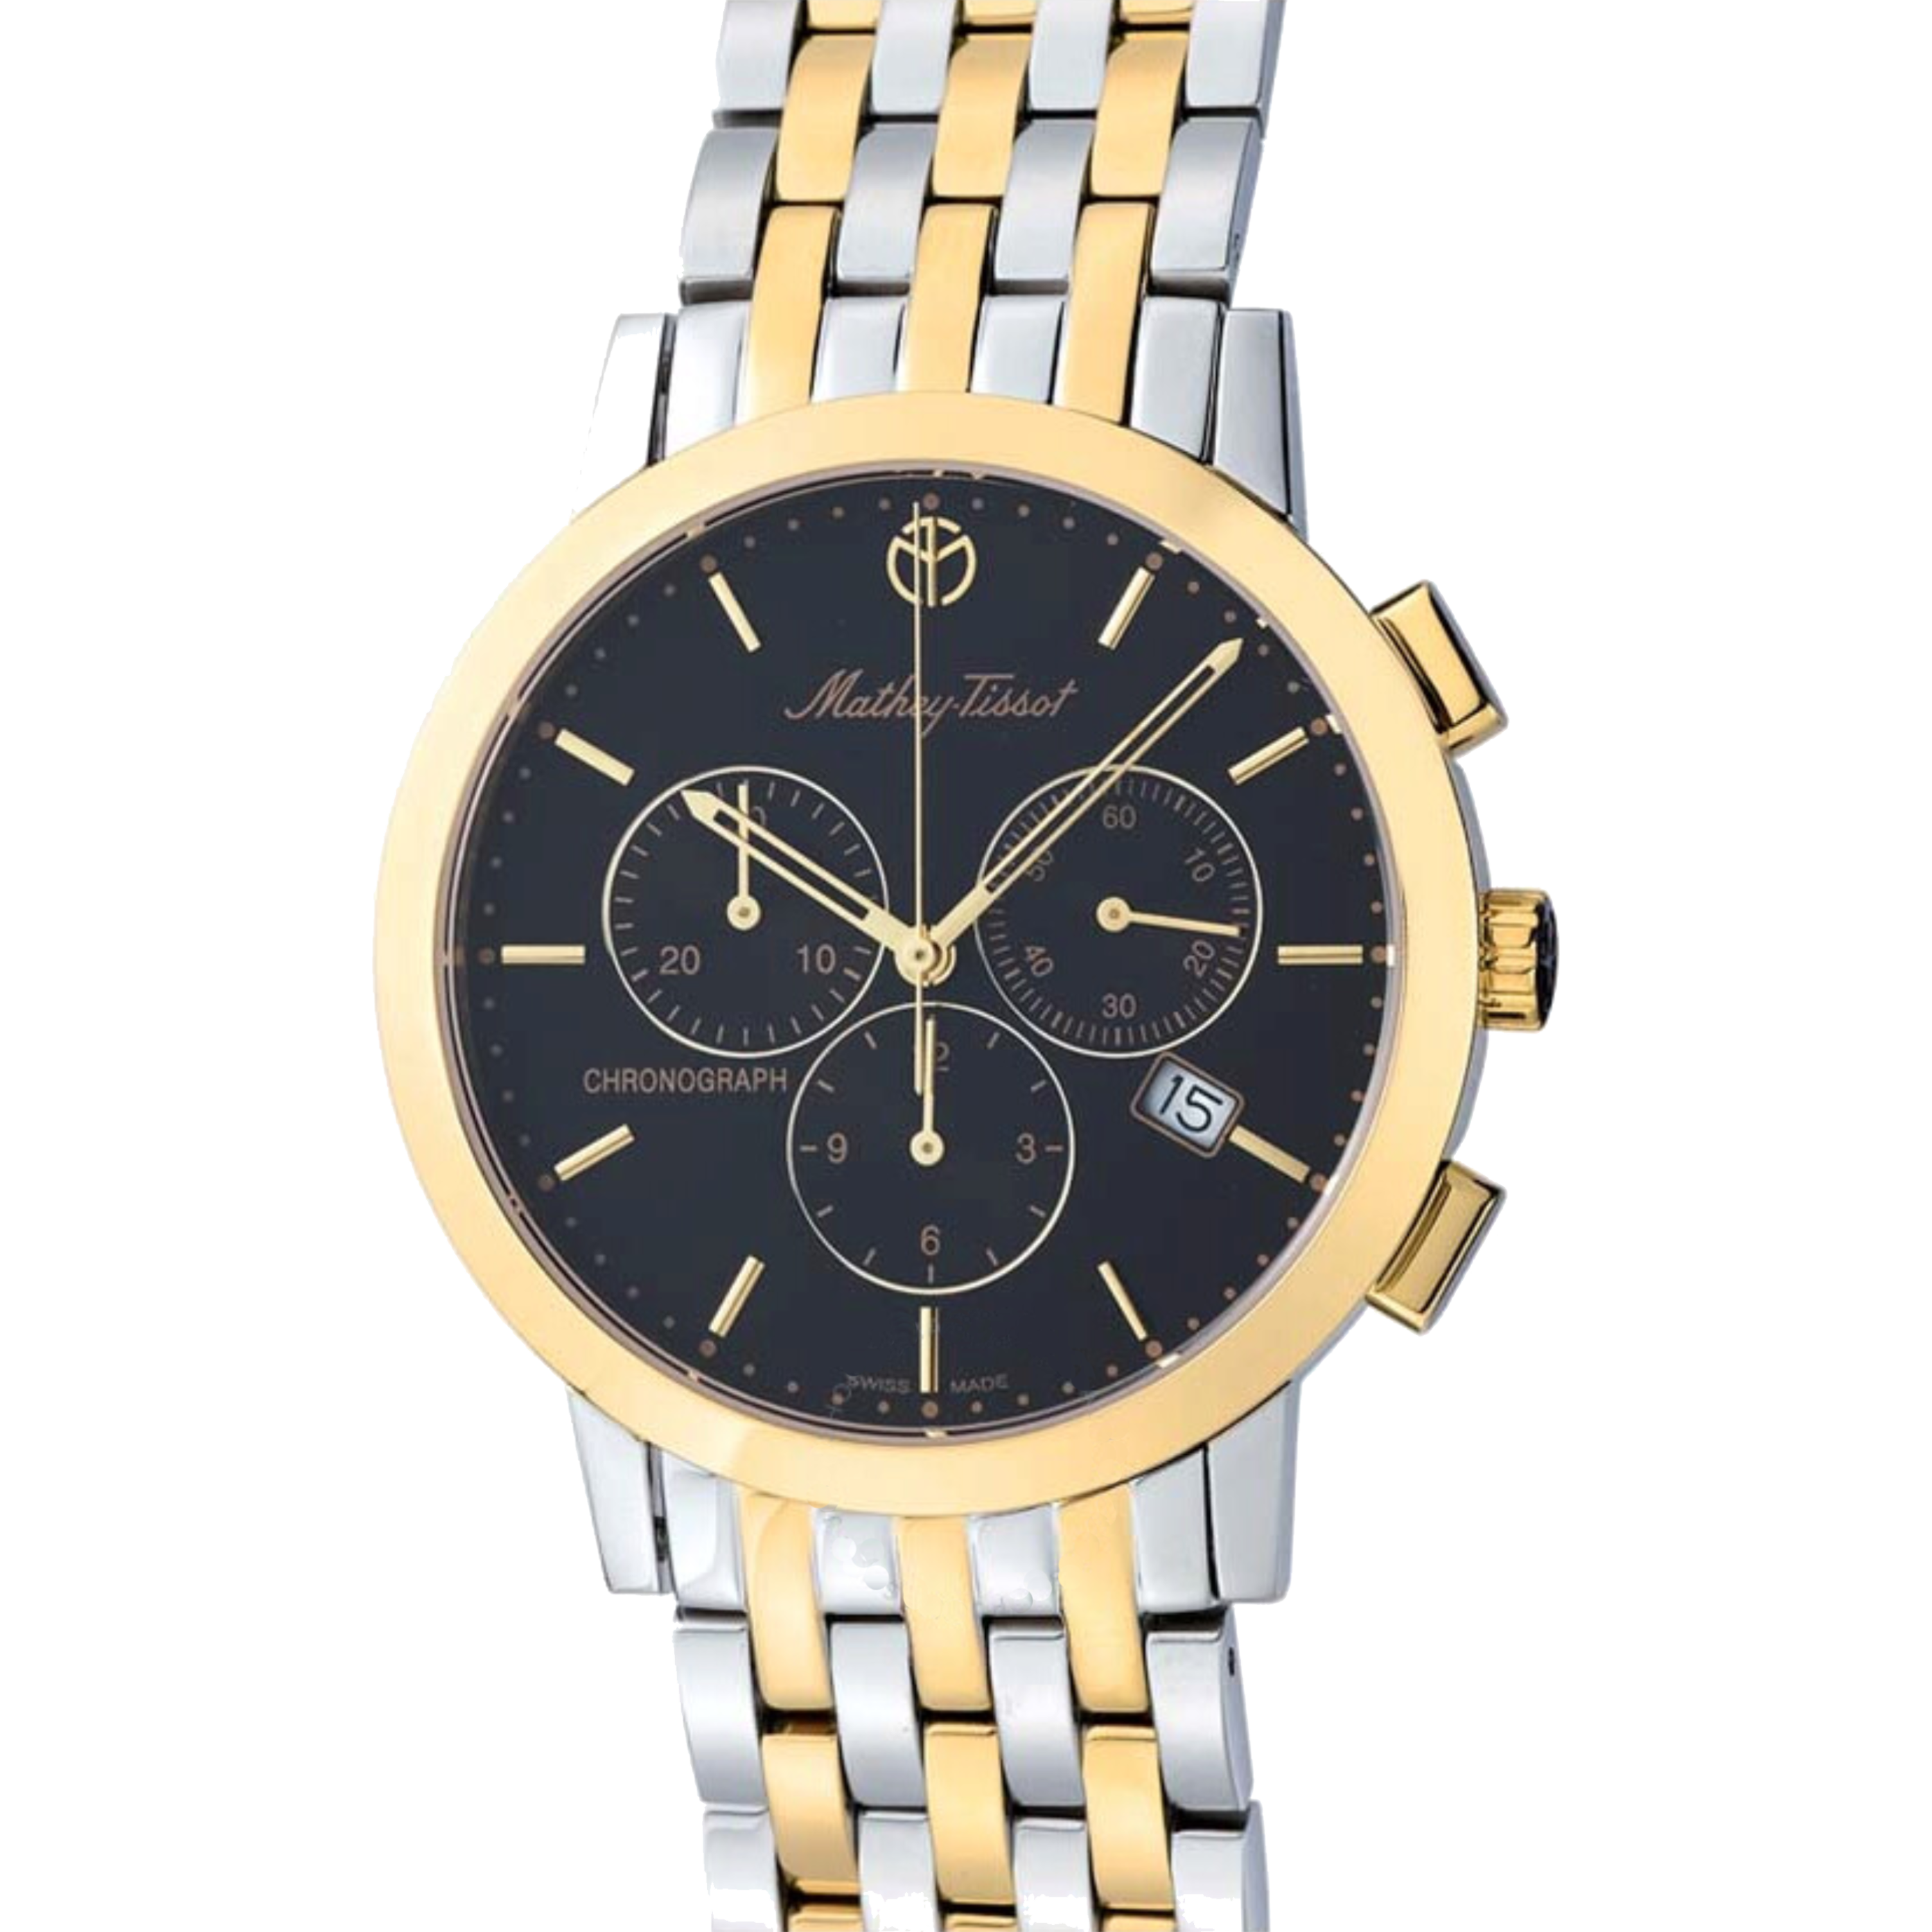 שעון יד לגבר Mathey Tissot H9315CHBN 40mm צבע זהב/כסף/שחור/כרונוגרף - אחריות לשנתיים ע"י היבואן